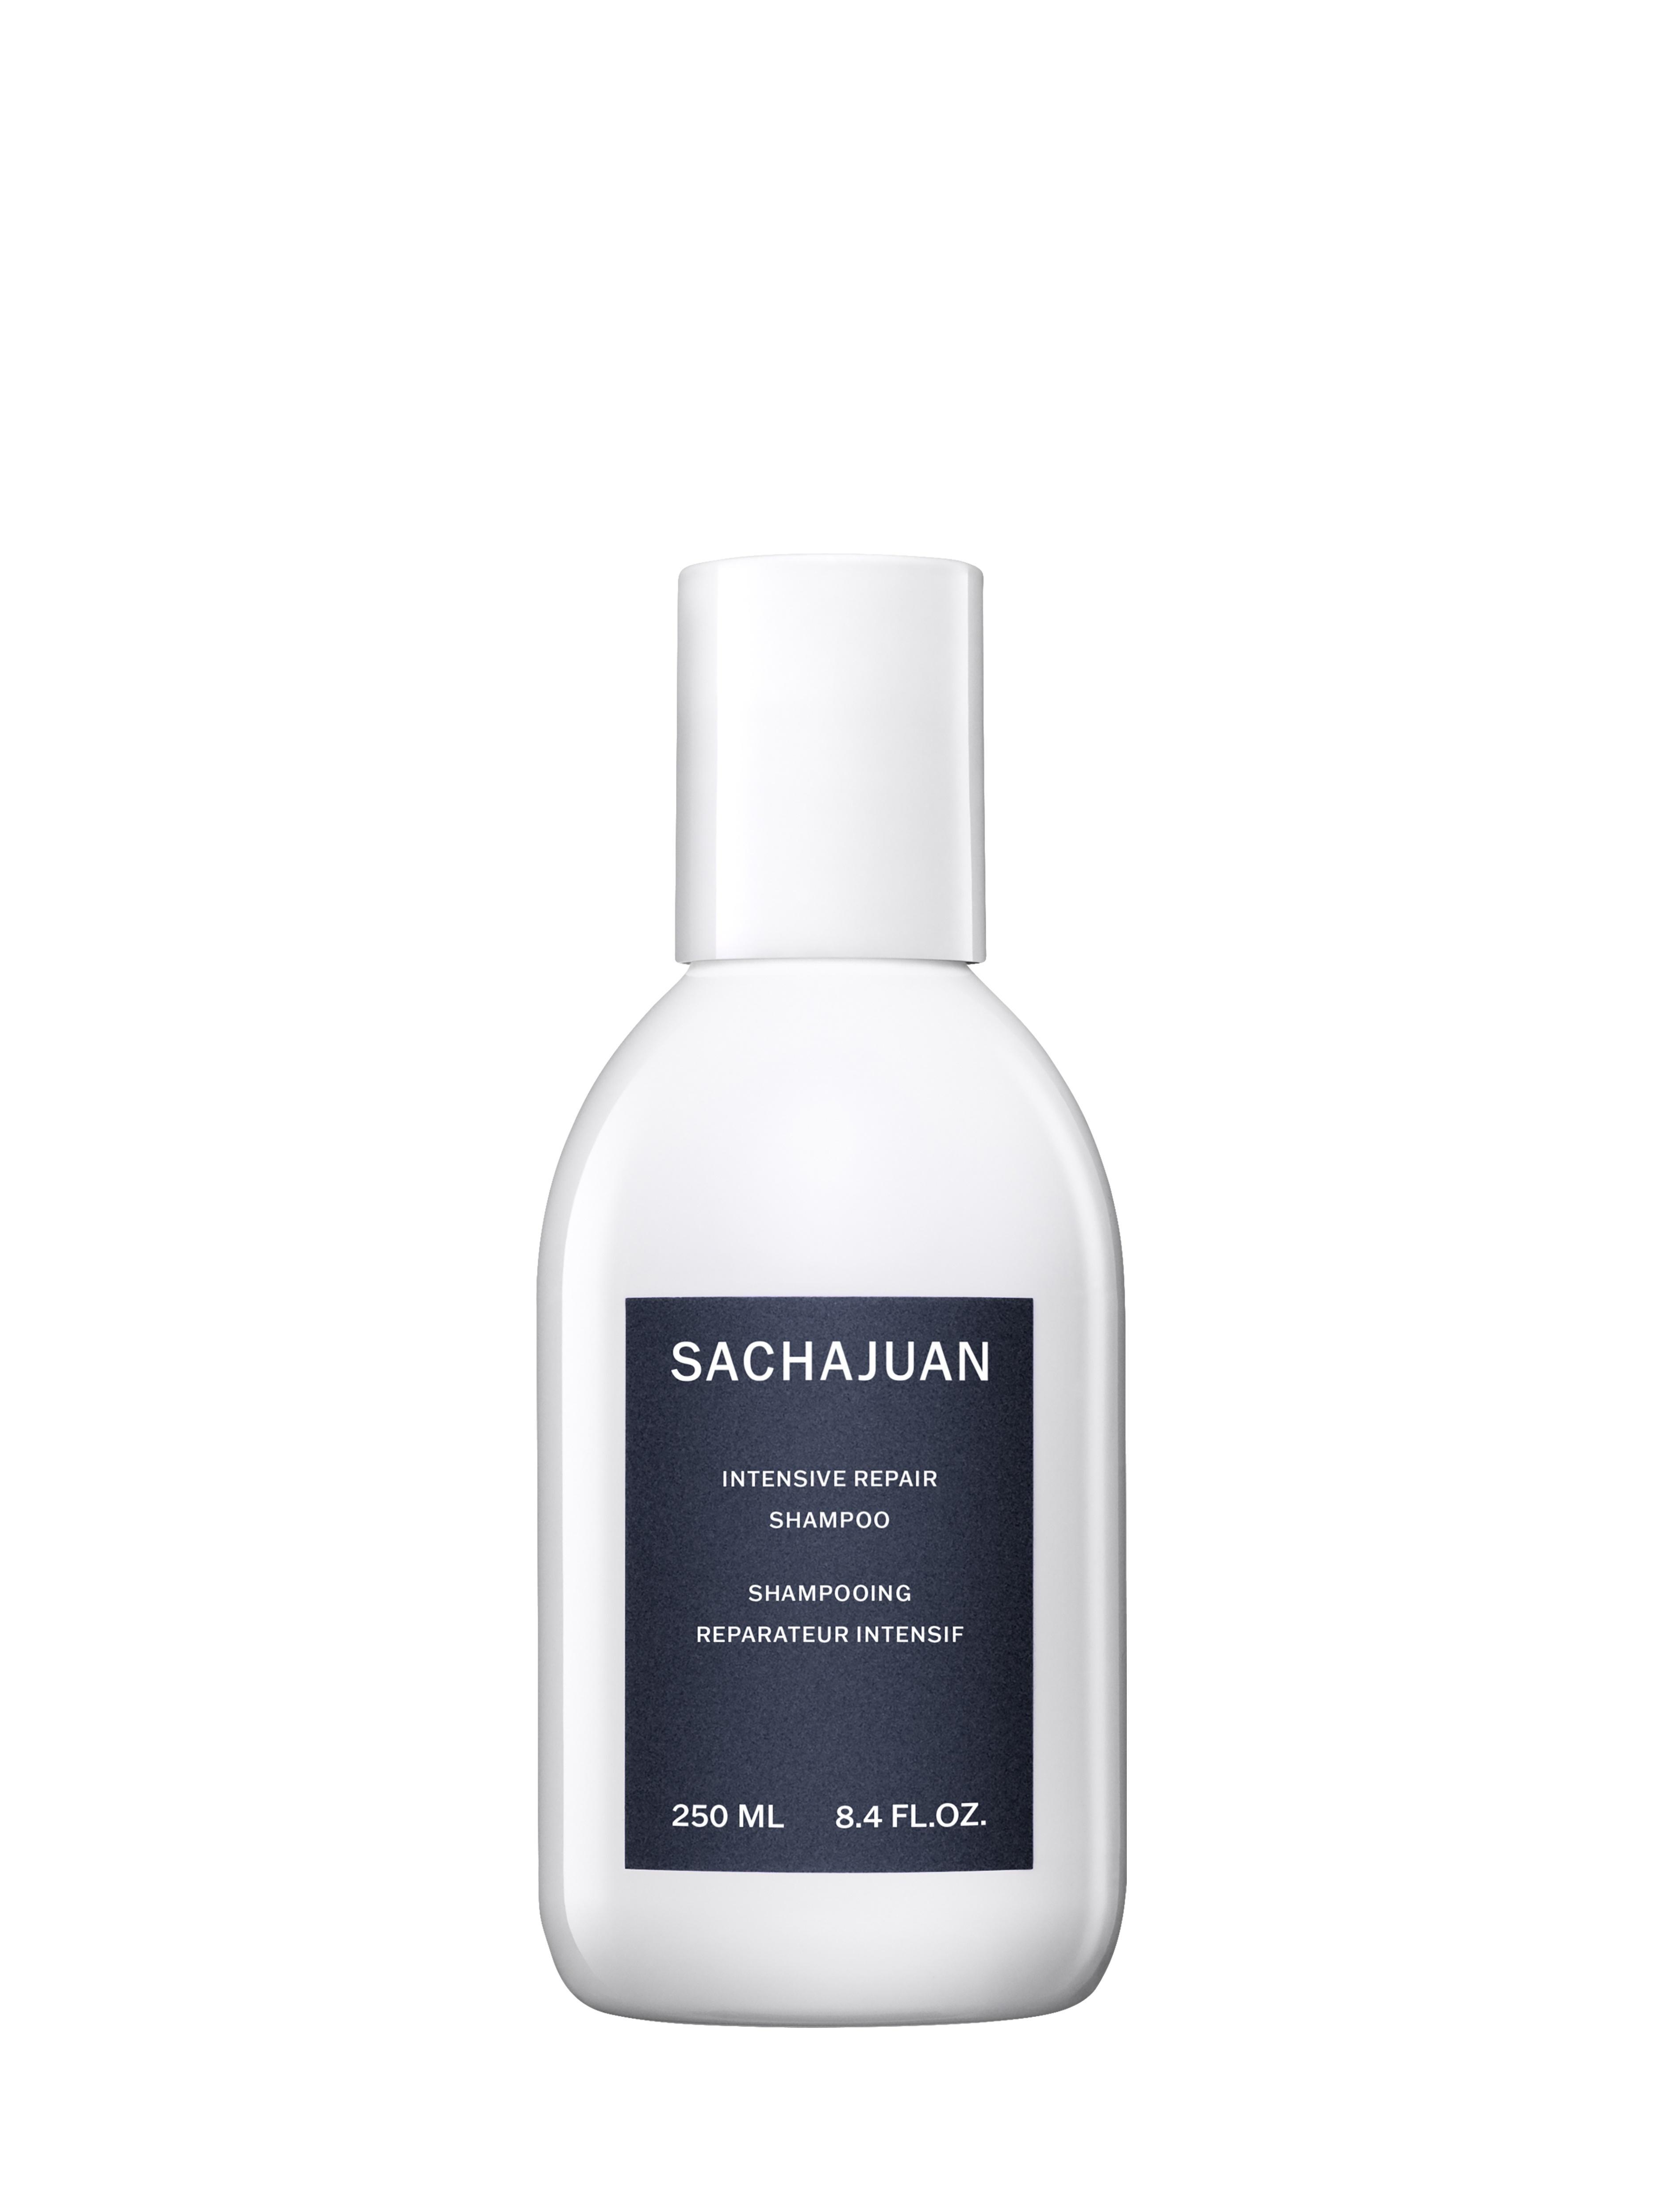 SACHAJUAN - Intensive Repair Shampoo